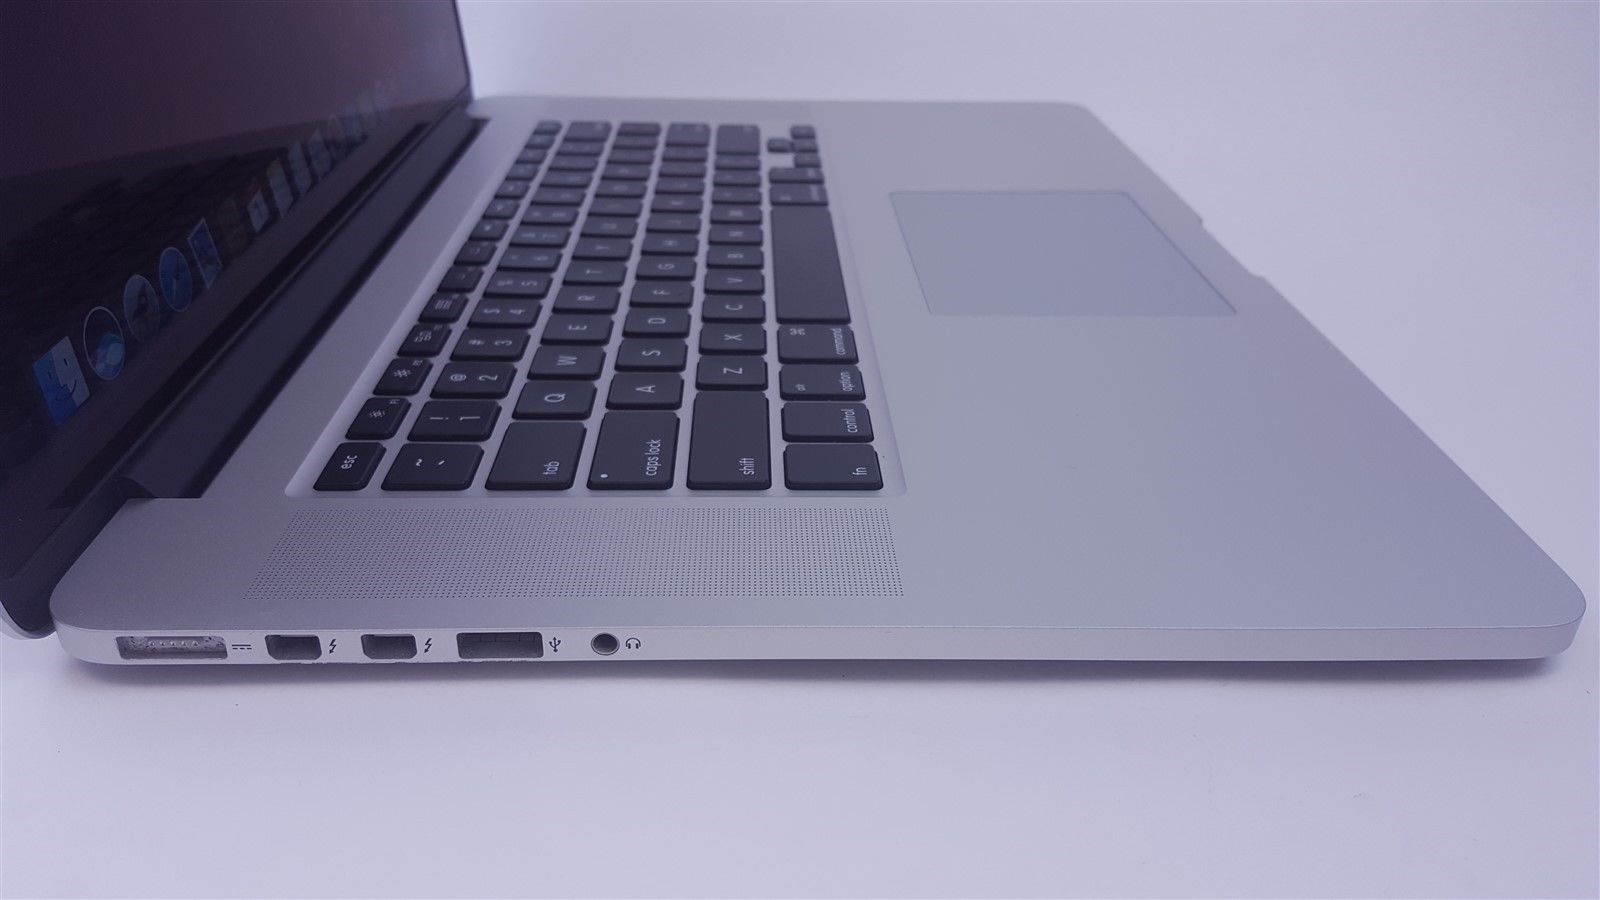 Apple Macbook Pro A1398 Retina 15.4" I7 2.2Hz 16Gb 256GB SSD Mid 2014 MGXA2LL/A